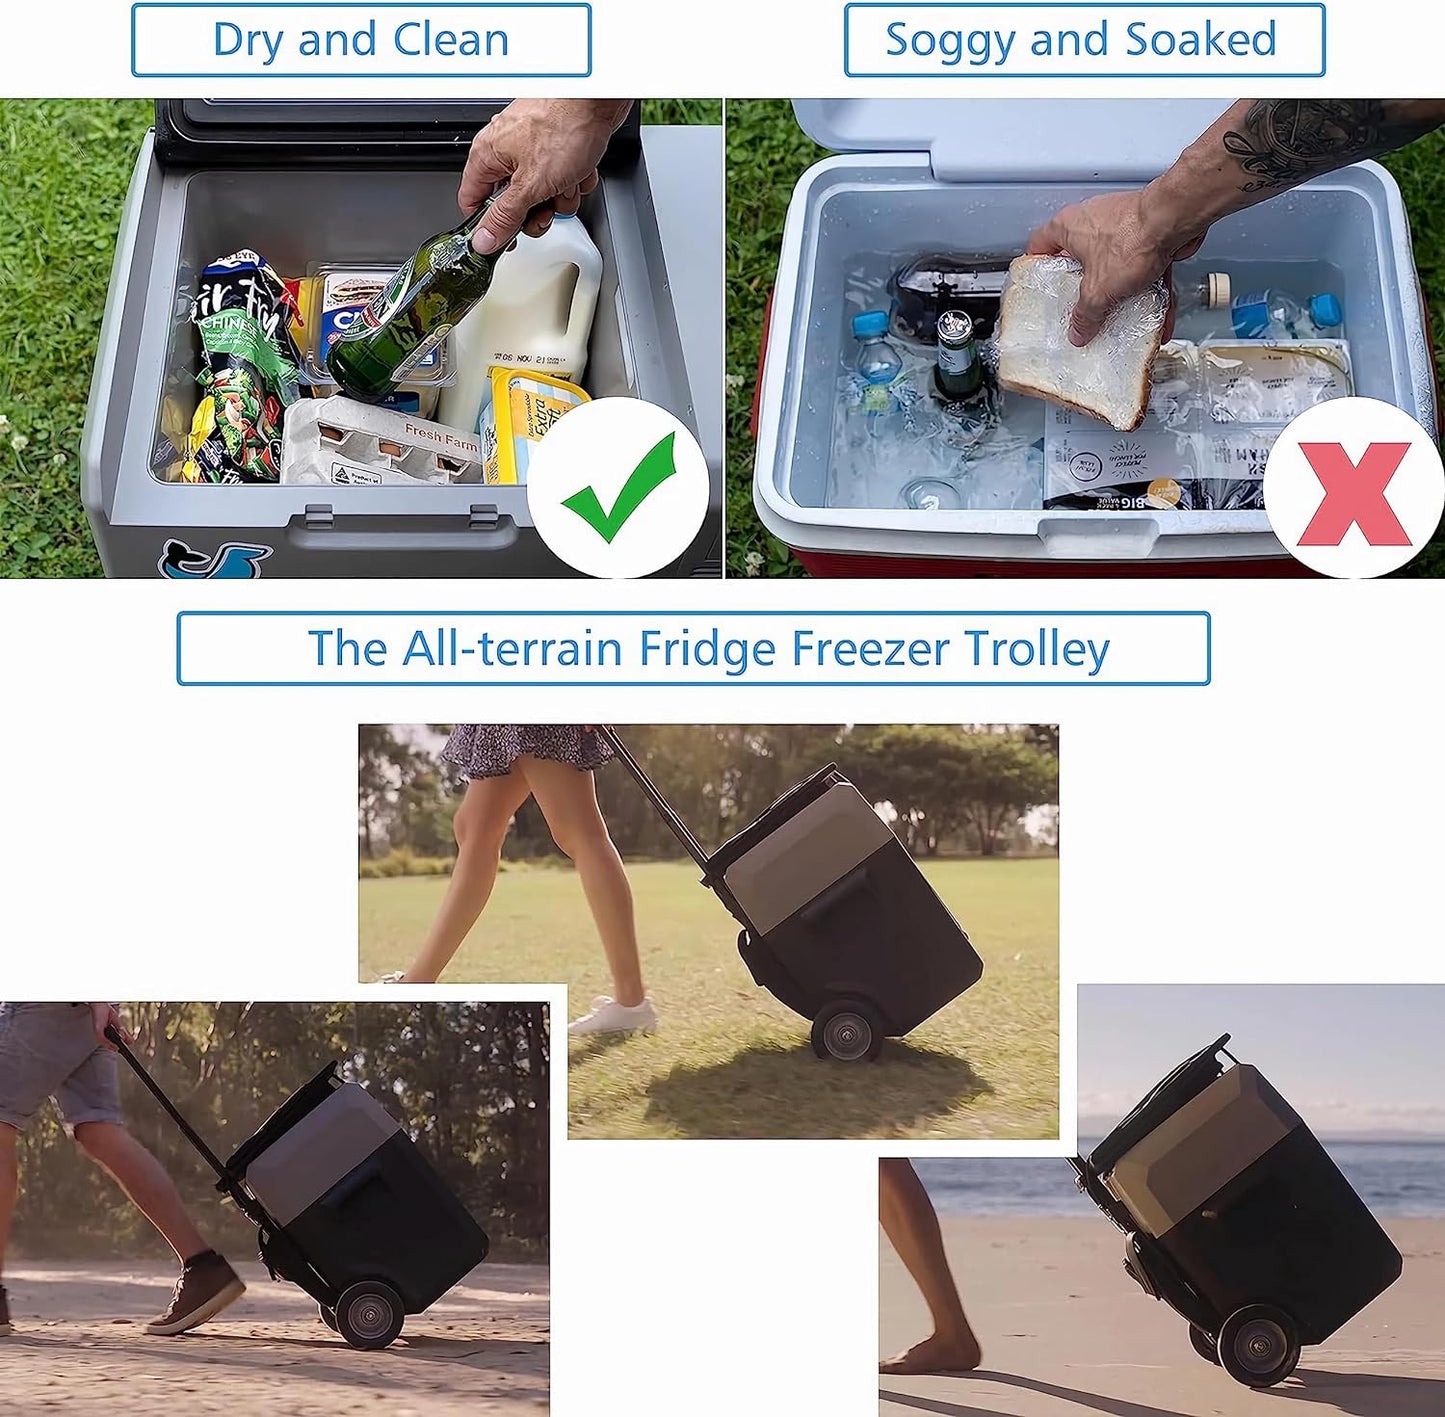 Acopower - LiONCooler Pro Portable Solar Fridge Freezer, 32 Quarts - With Battery